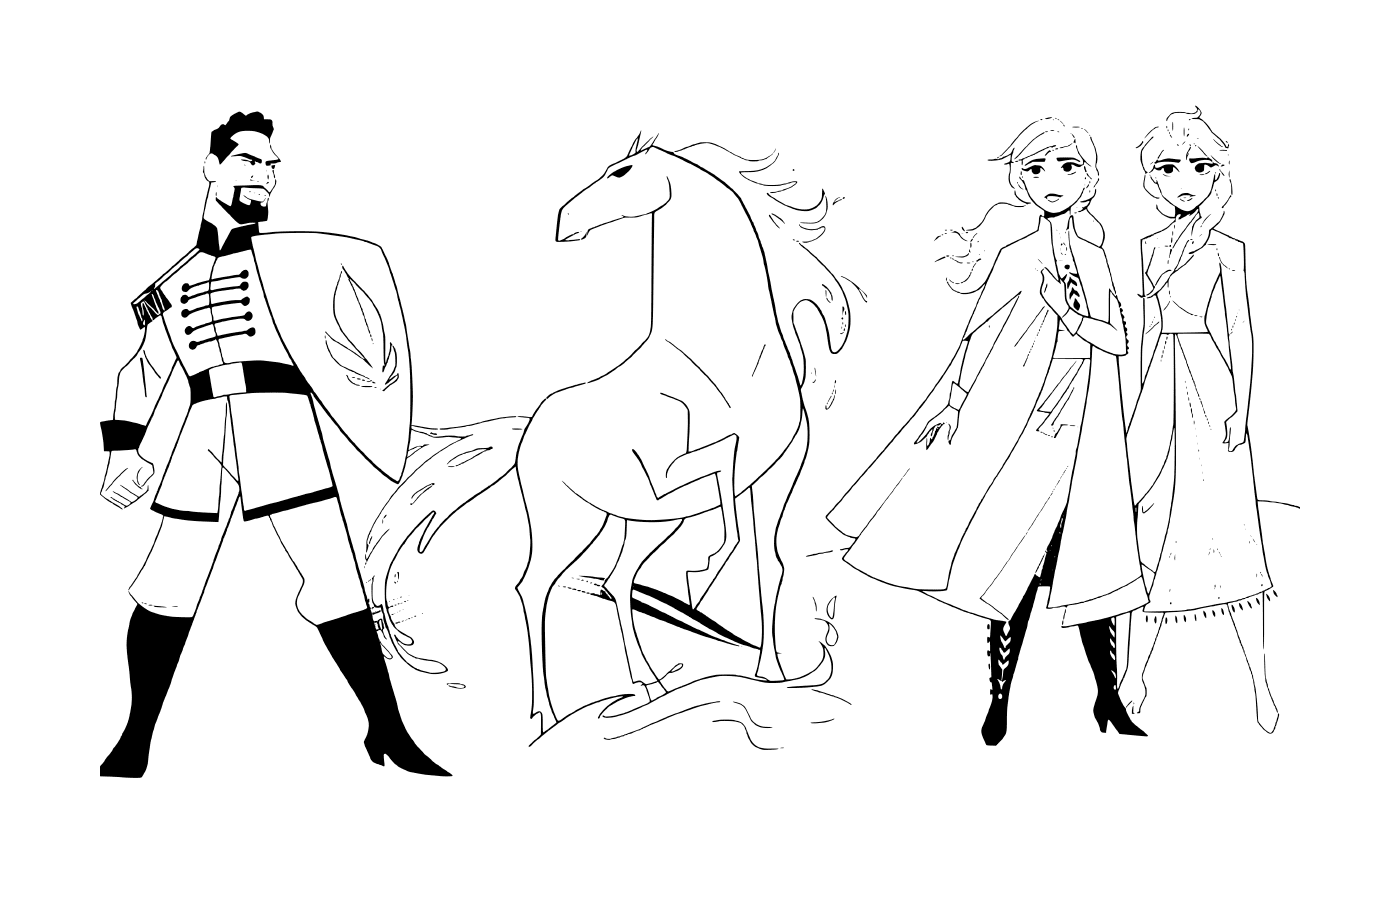  Анна и Эльза с лошадью Нокка против лейтенанта Маттиаса из Снежной Королевы 2 